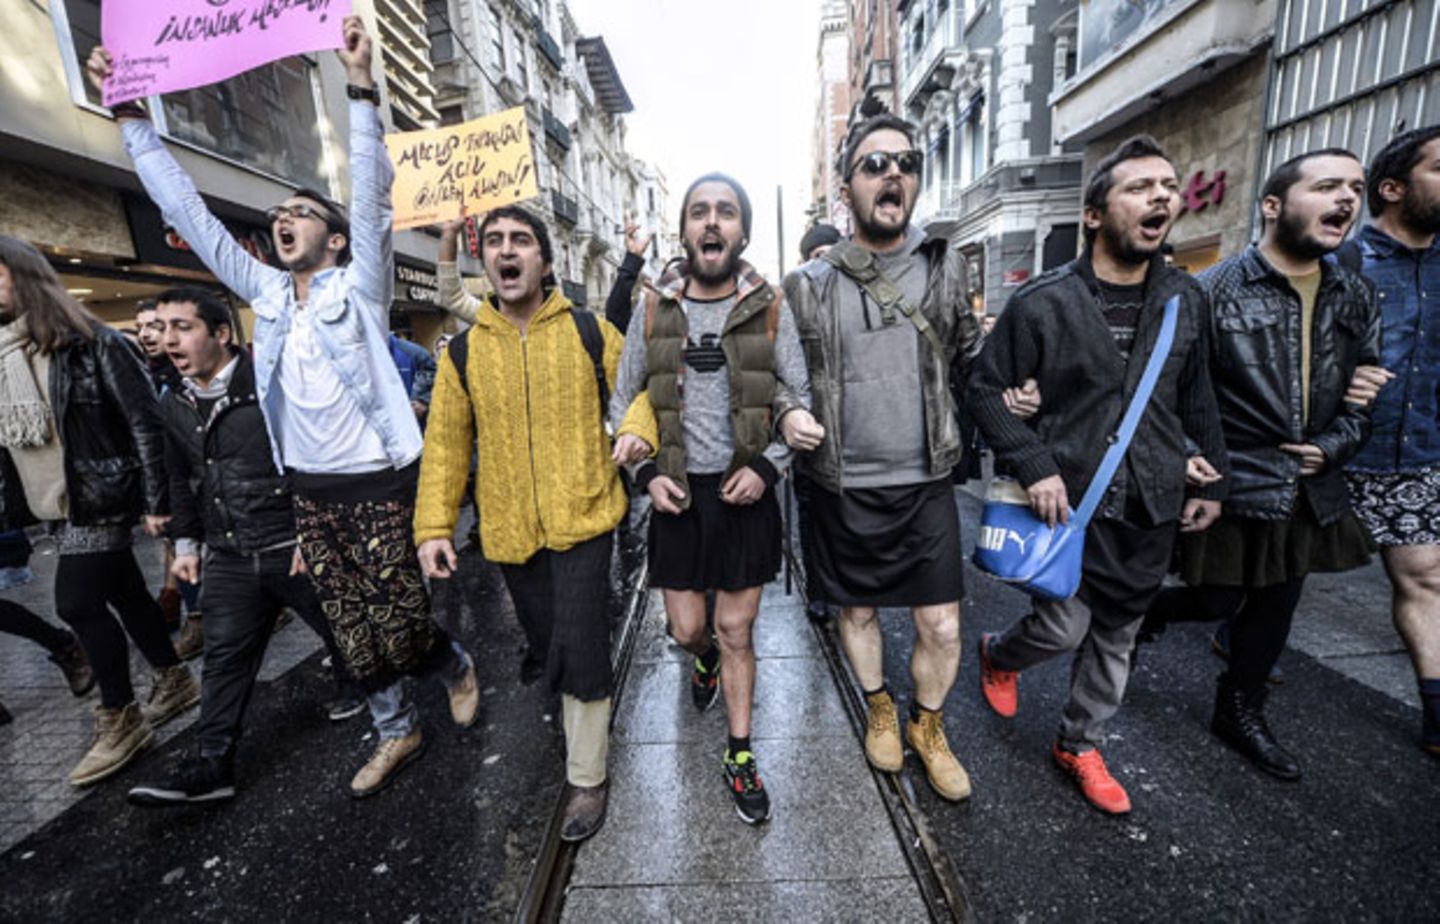 Türkische Männer protestieren in Miniröcken gegen sexuelle Gewalt